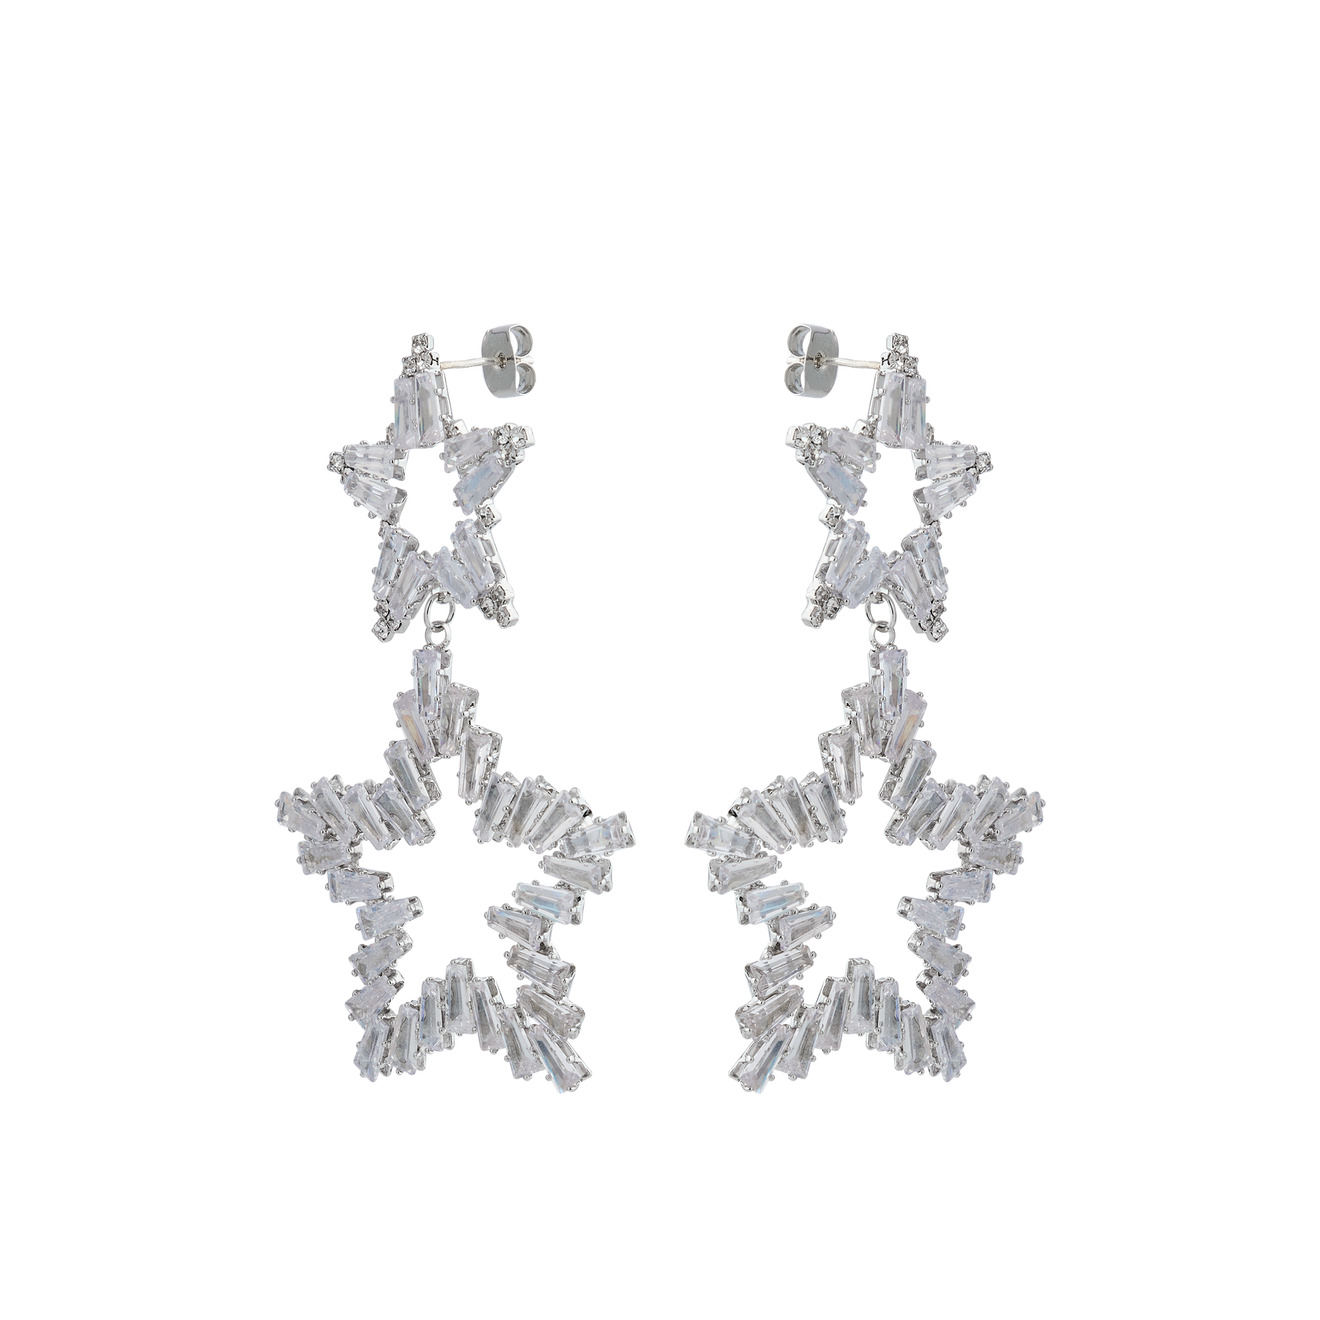 Herald Percy Серебристые серьги из двух звезд с кристаллами herald percy серебристые серьги из разных дорожек